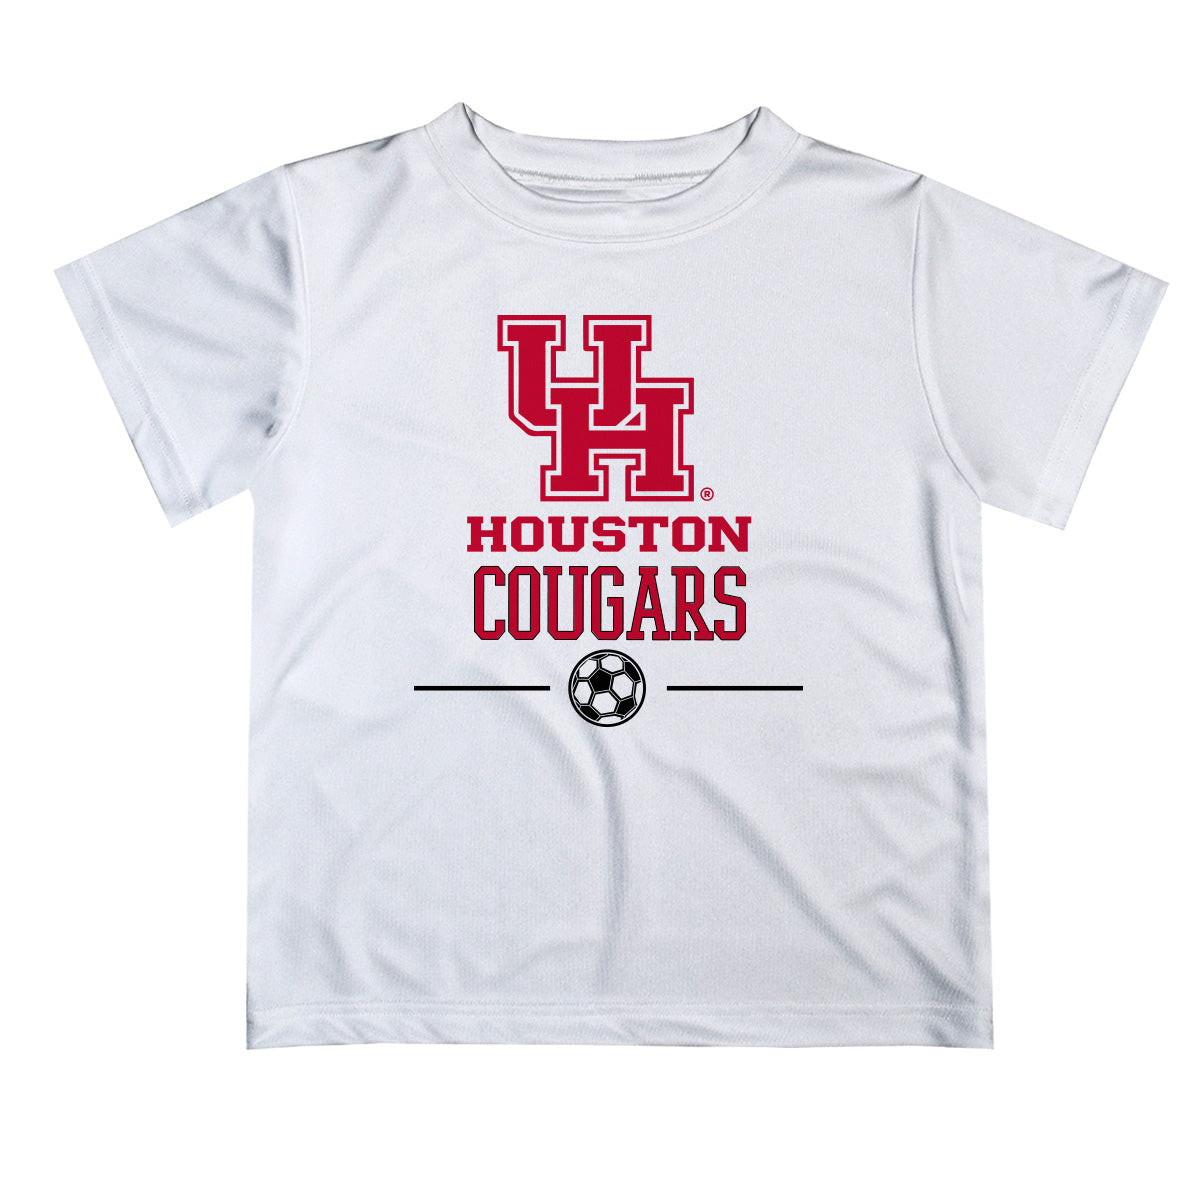 Houston Cougars Vive La Fete Soccer V1 White Short Sleeve Tee Shirt